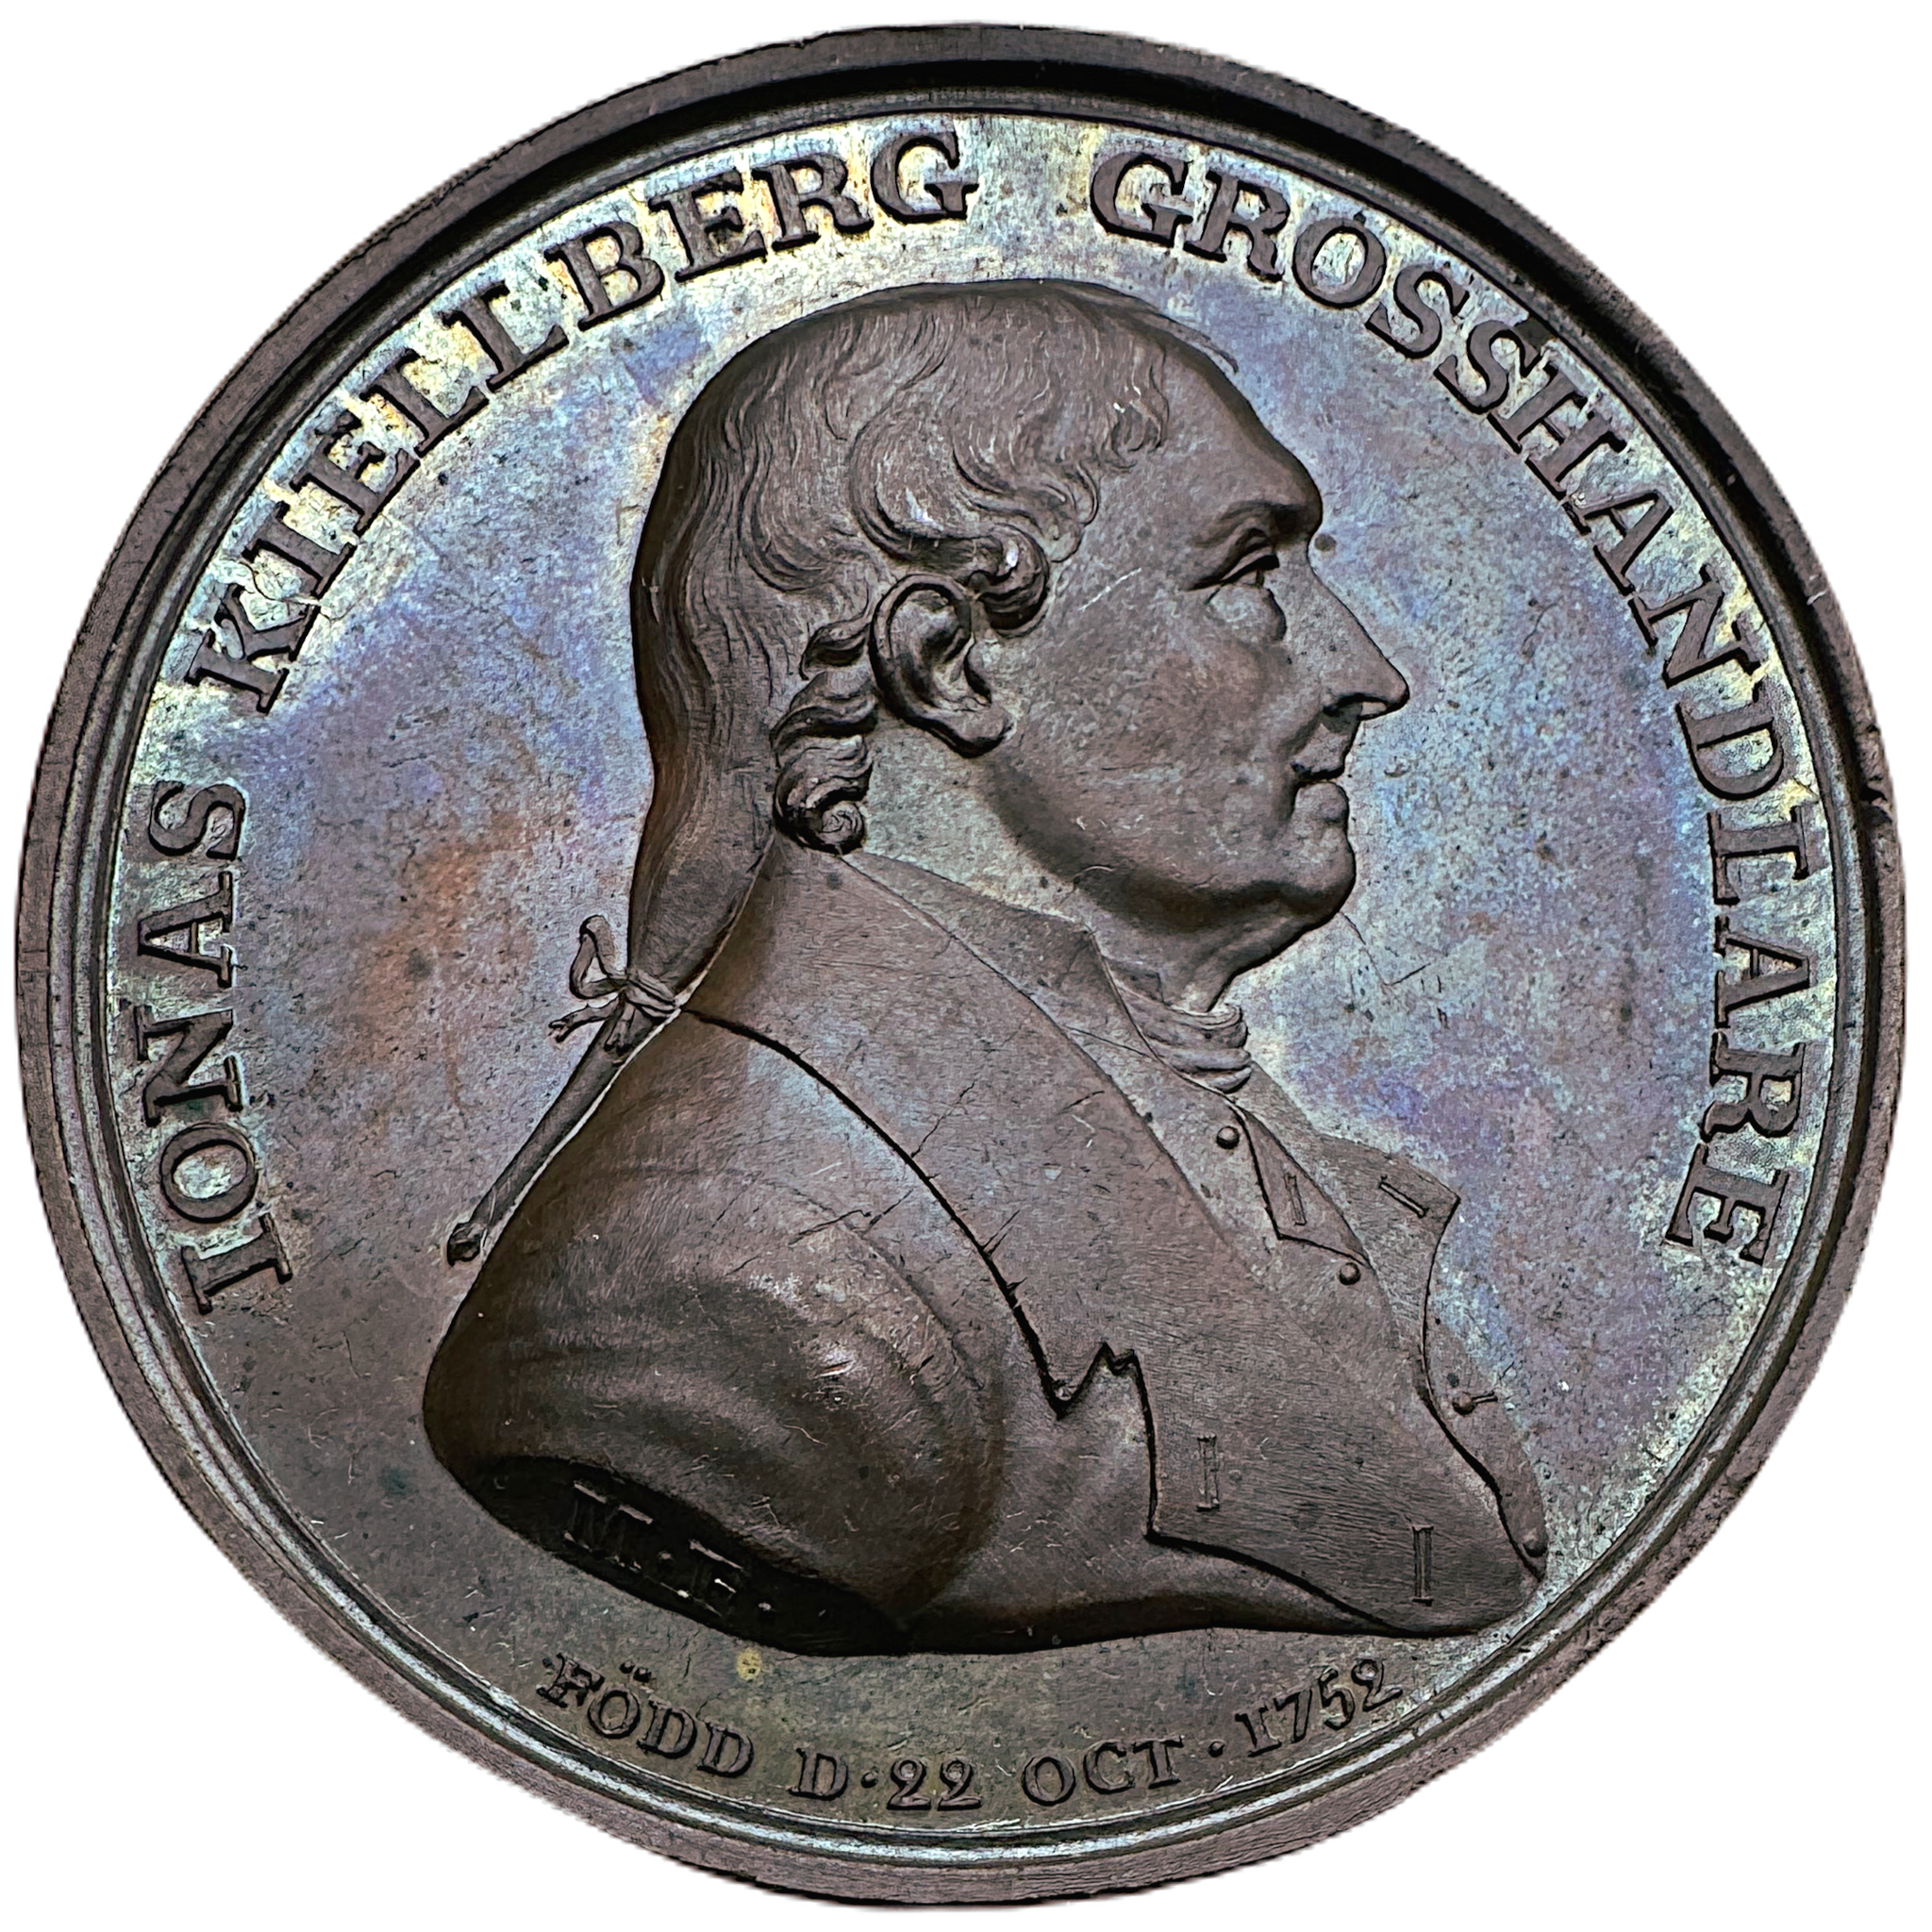 Jonas Kjellberg (1752-1832). Grosshandlare, donator - ​Mycket sällsynt, RR av Mauritz Frumerie cirka 1828